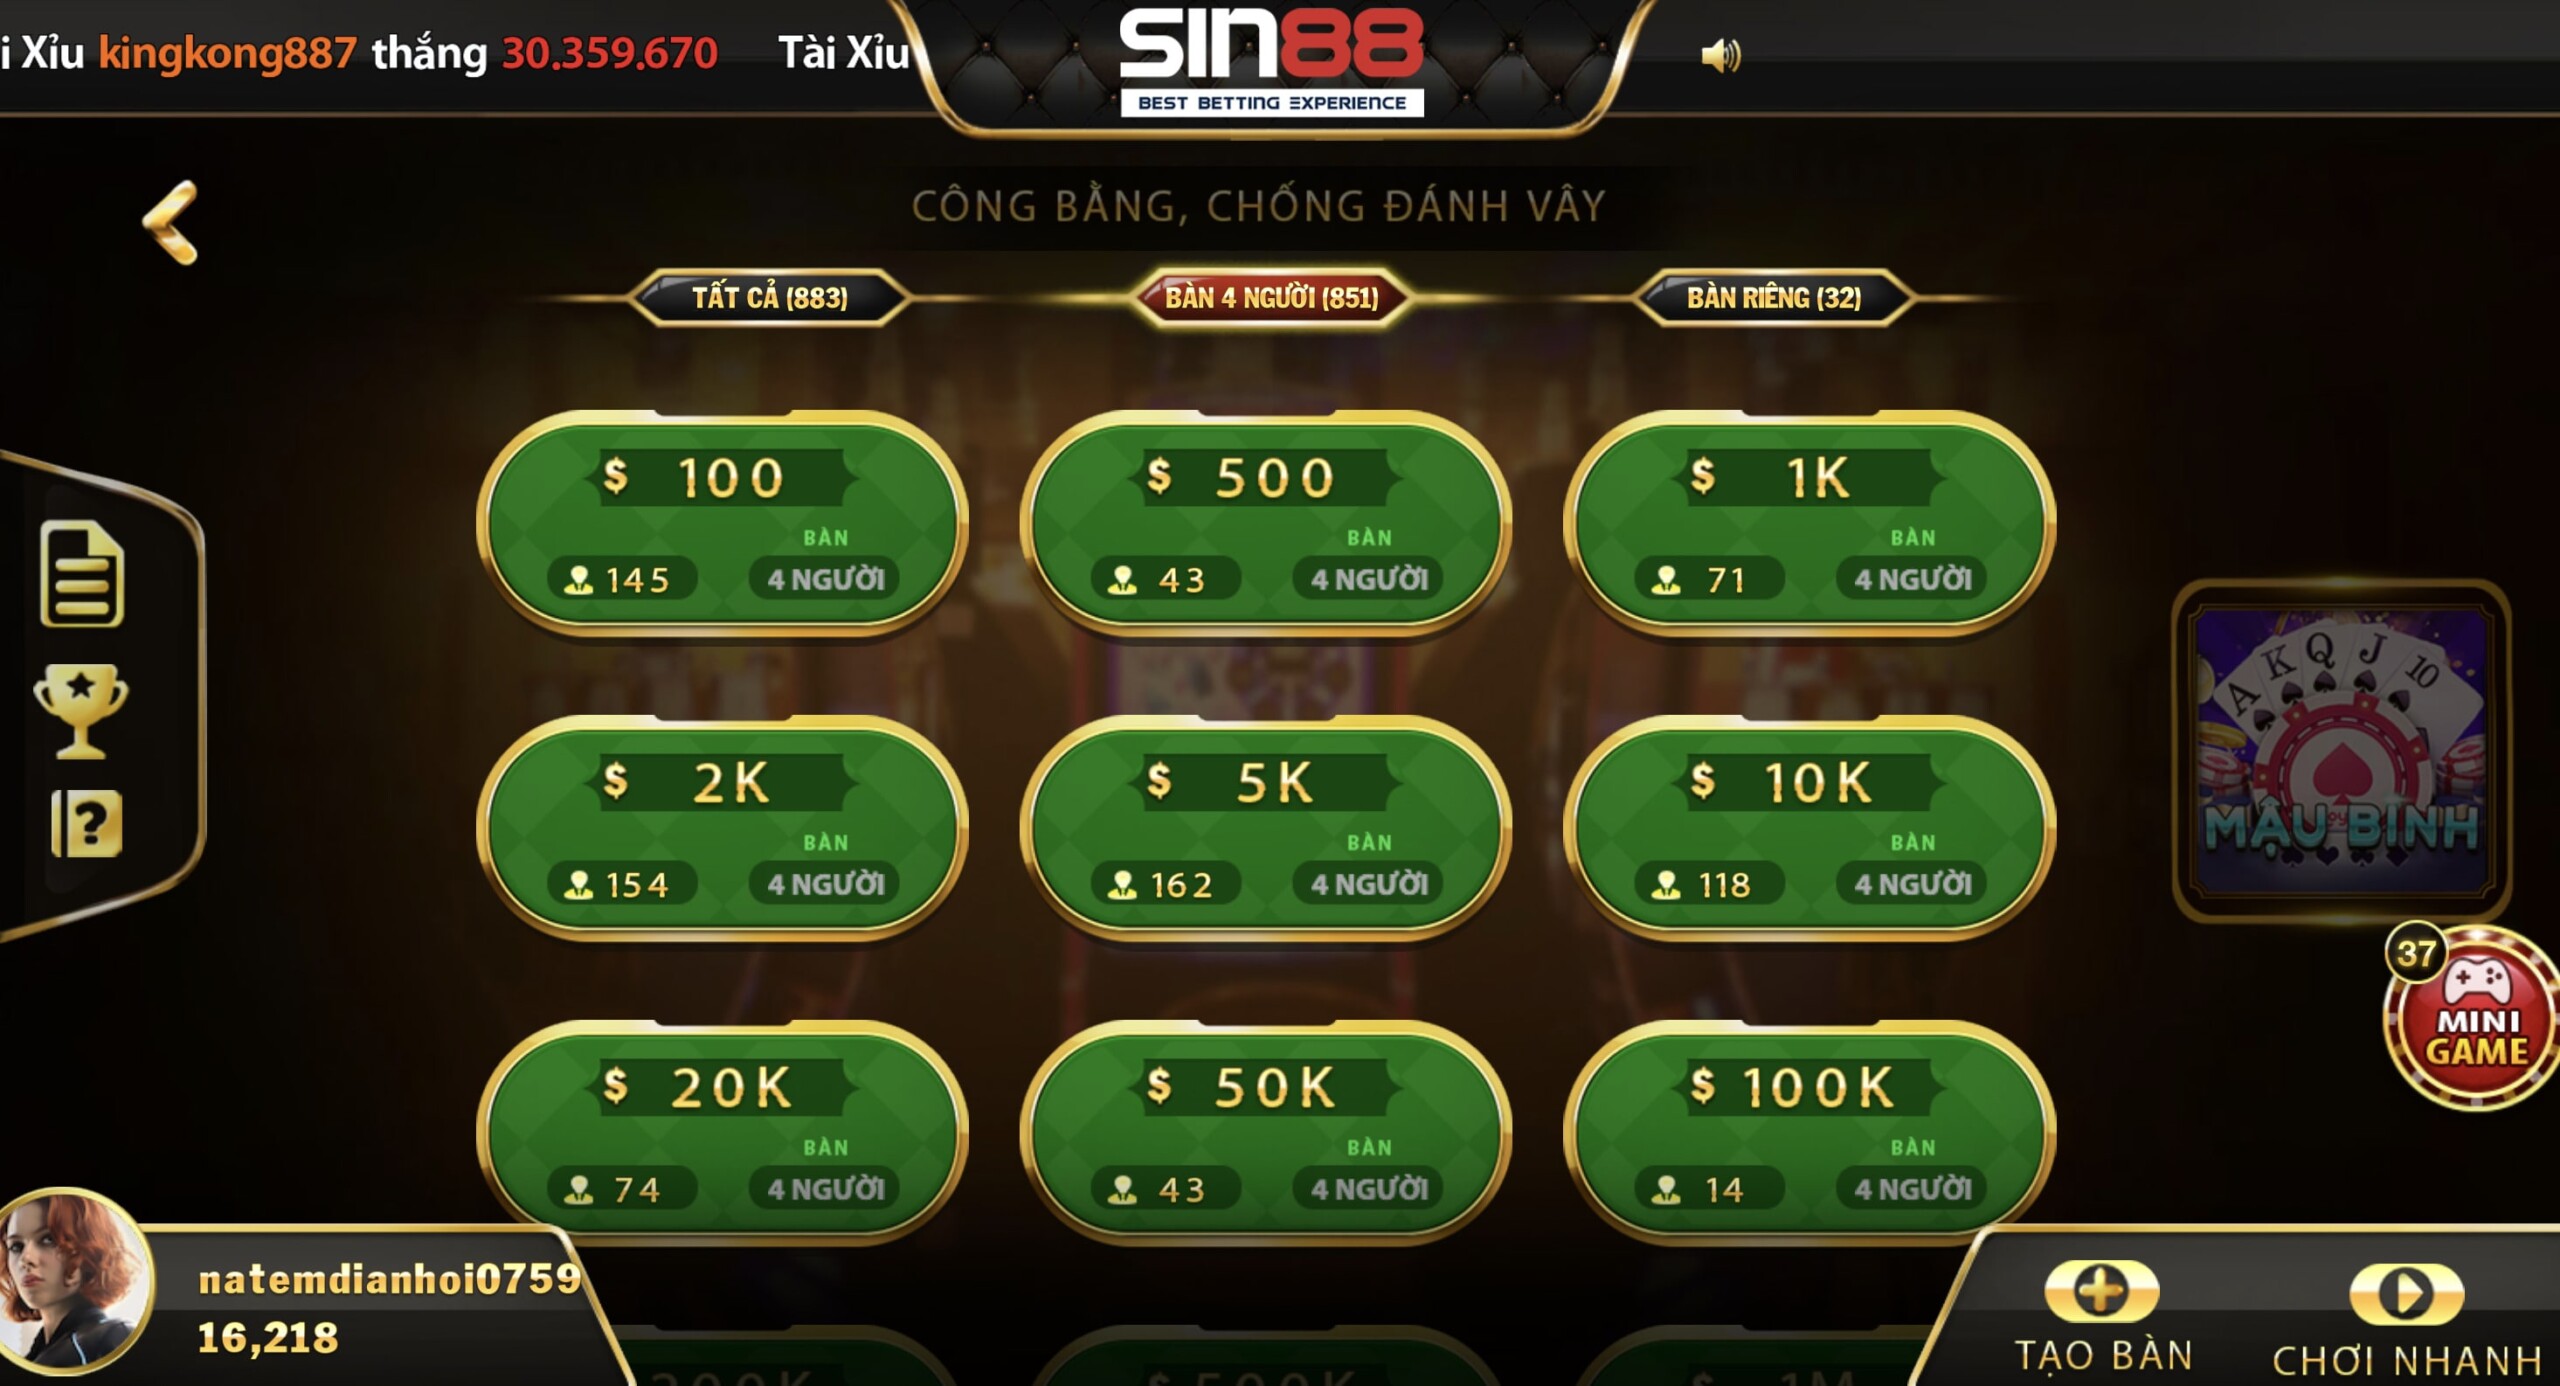 Lựa chọn bàn cược phù hợp khi tham gia mậu binh Sin88